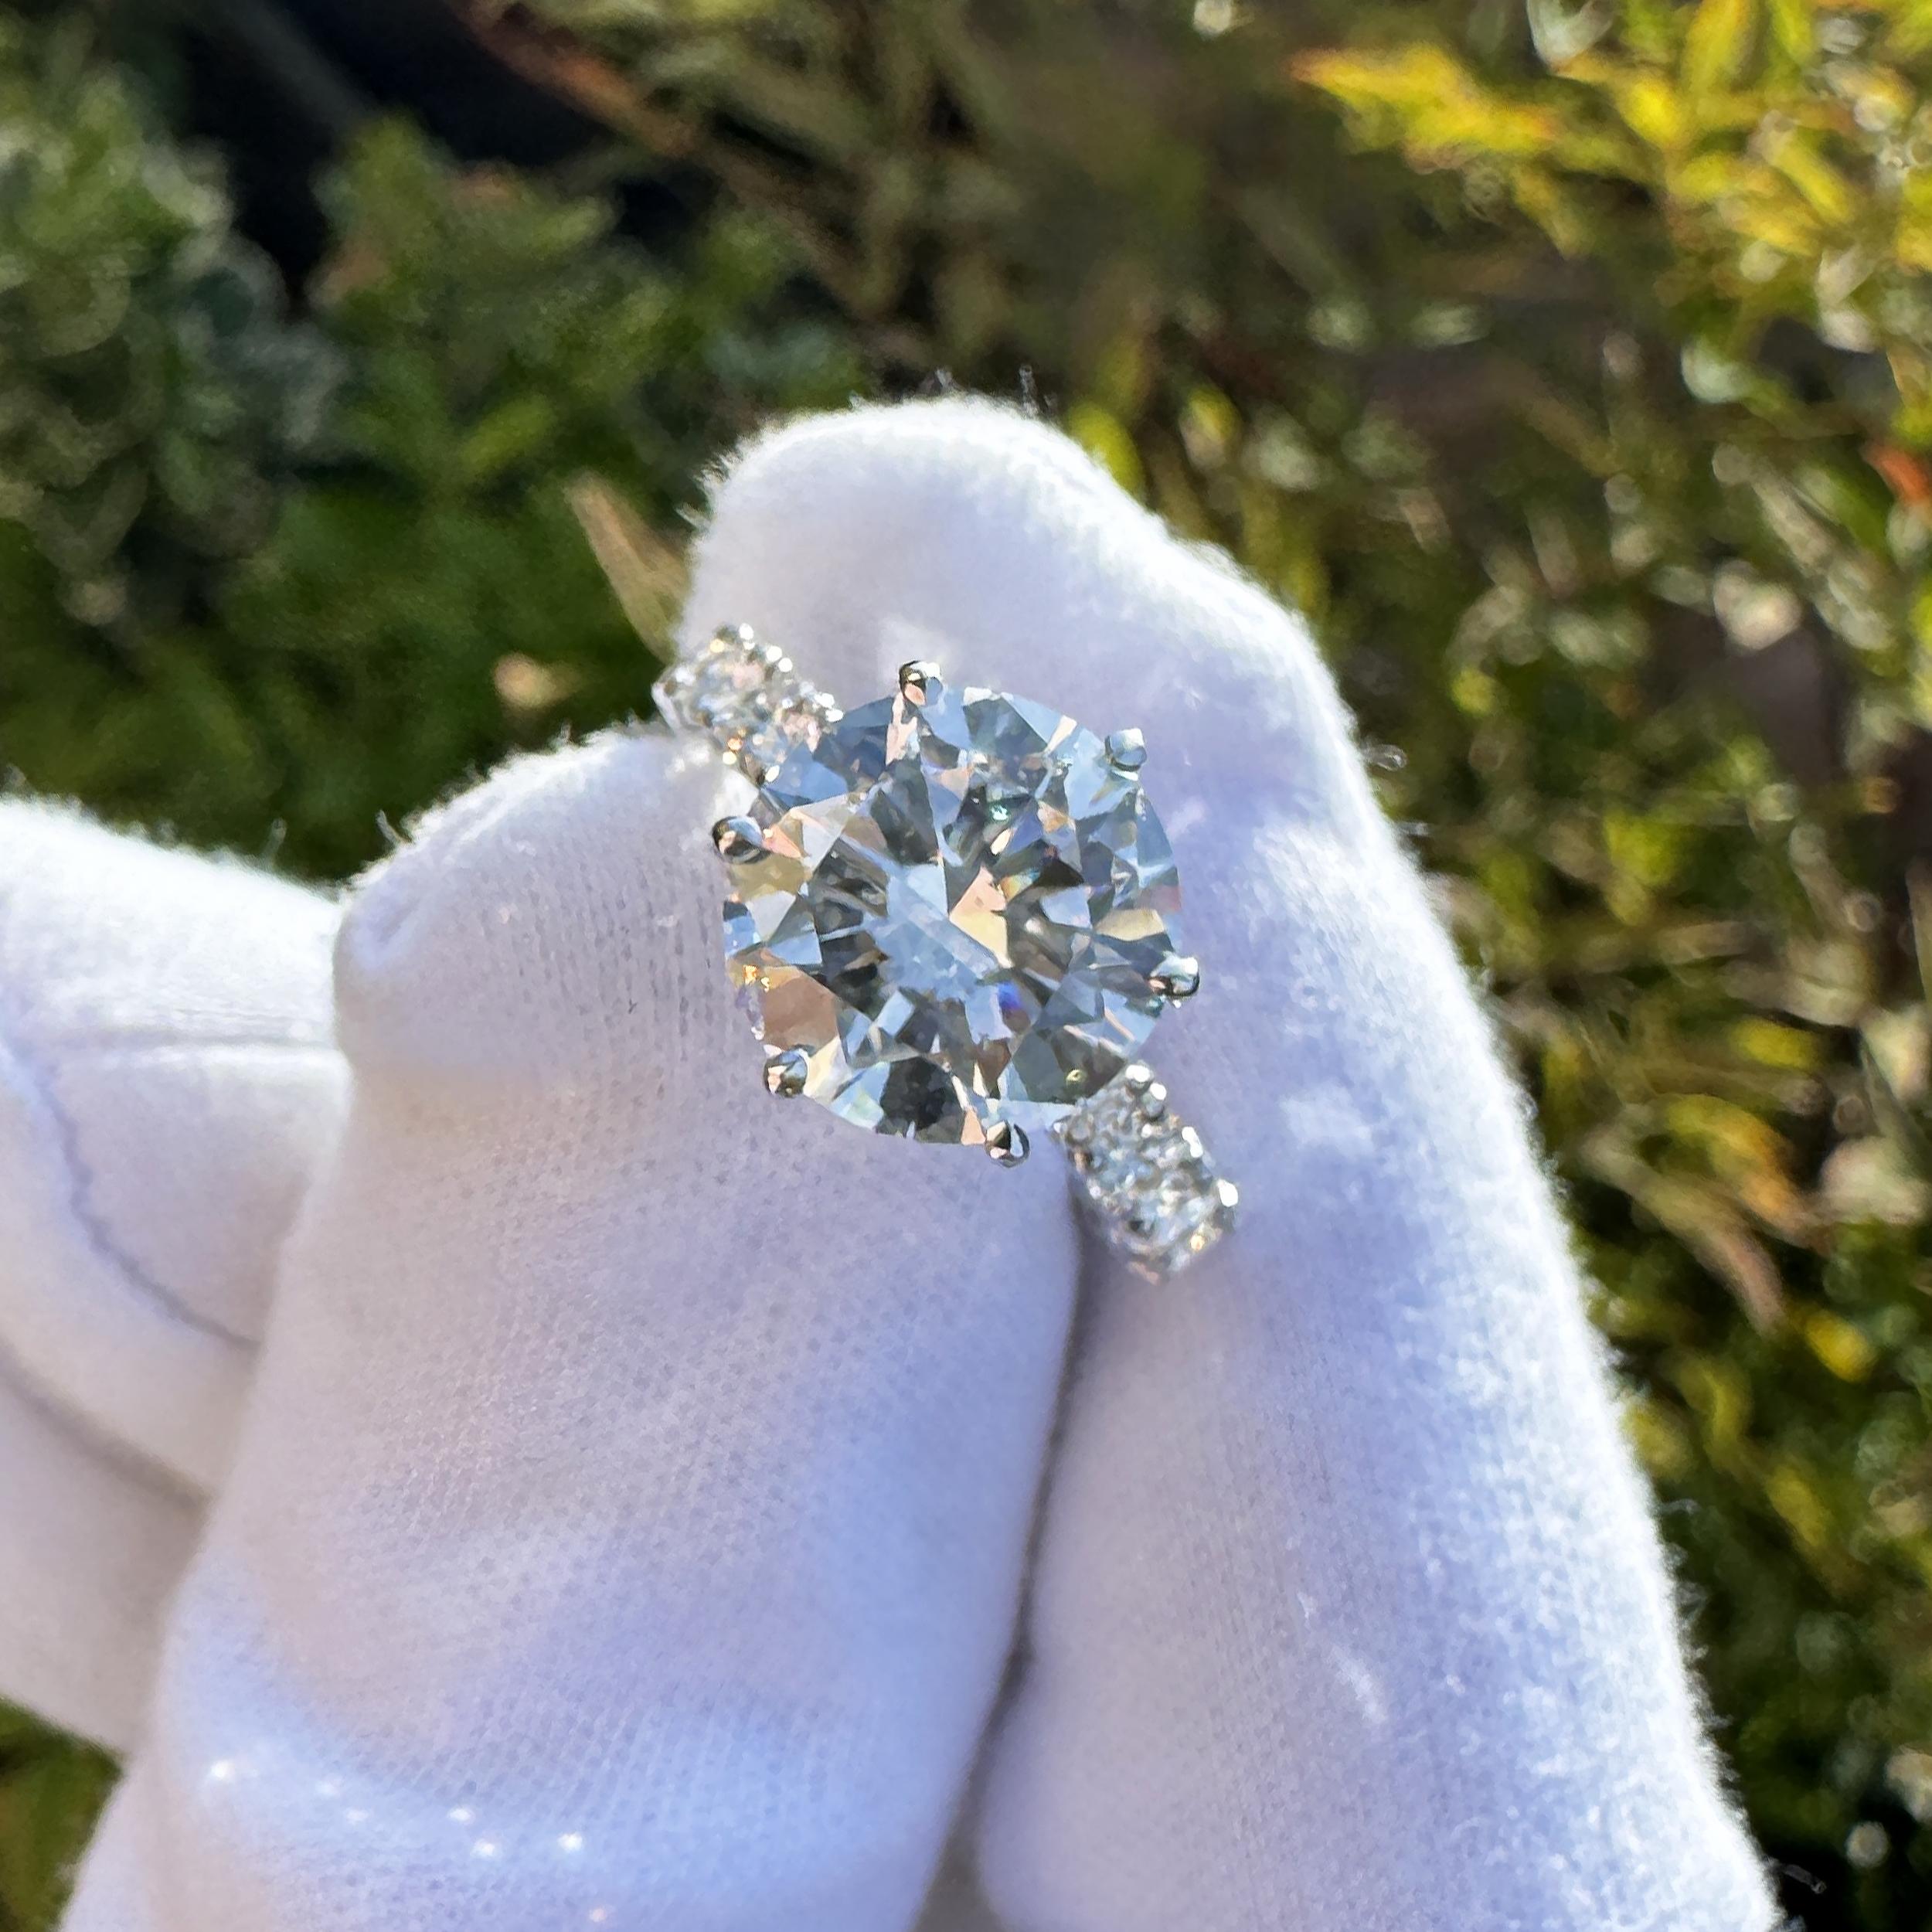 Atemberaubender 5,01-karätiger GIA-zertifizierter Diamant in 18-karätiger Weißgoldfassung mit 1,99-karätigen weißen Brillanten.

Wir können die Einstellung nach Ihren Wünschen anpassen oder ersetzen. Bitte kontaktieren Sie uns für weitere